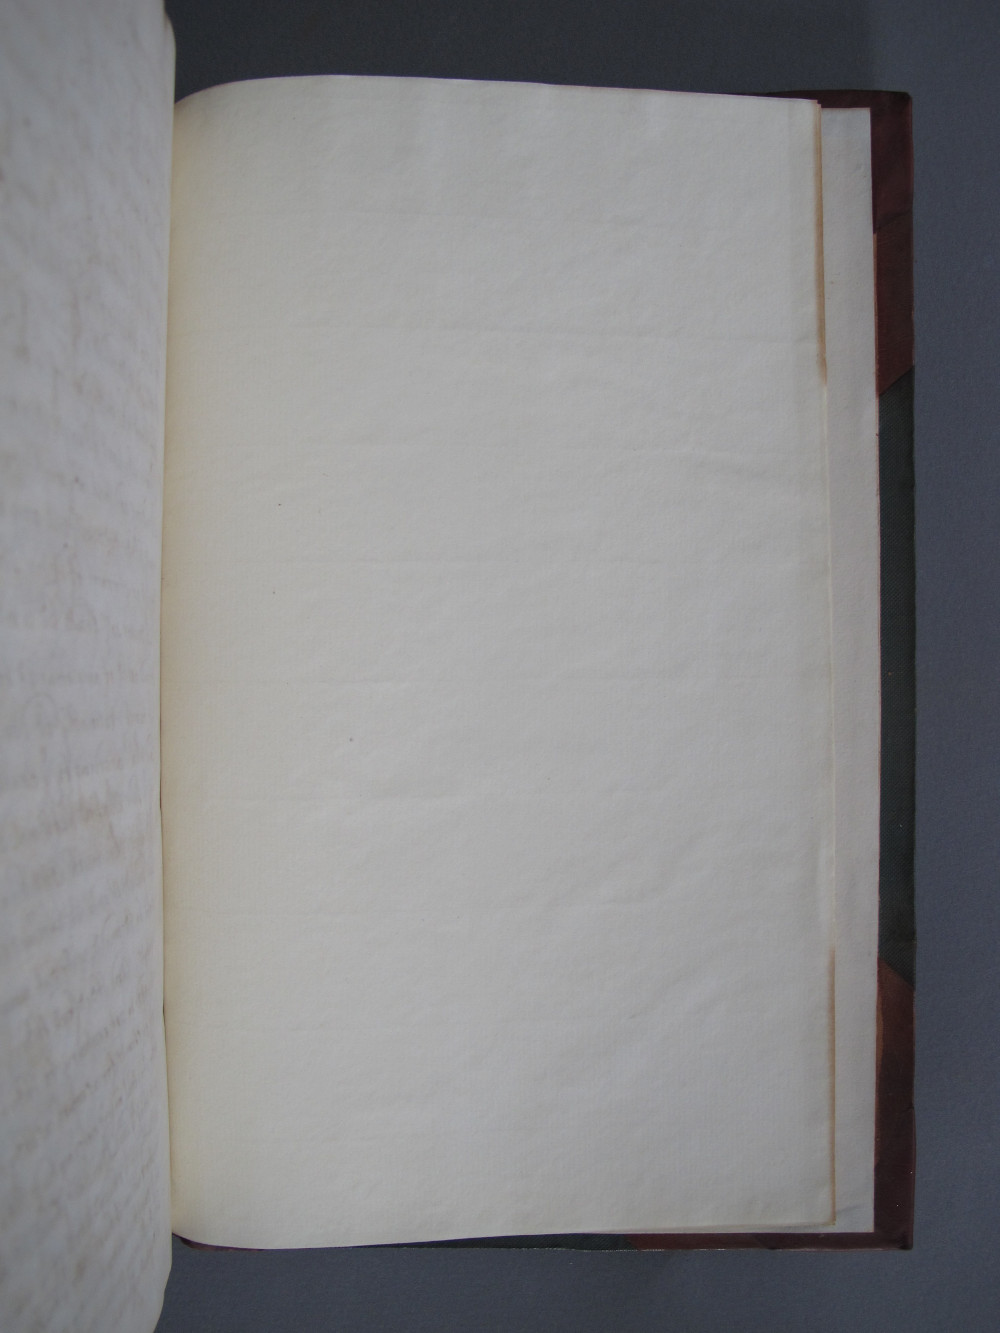 Folio 250 recto